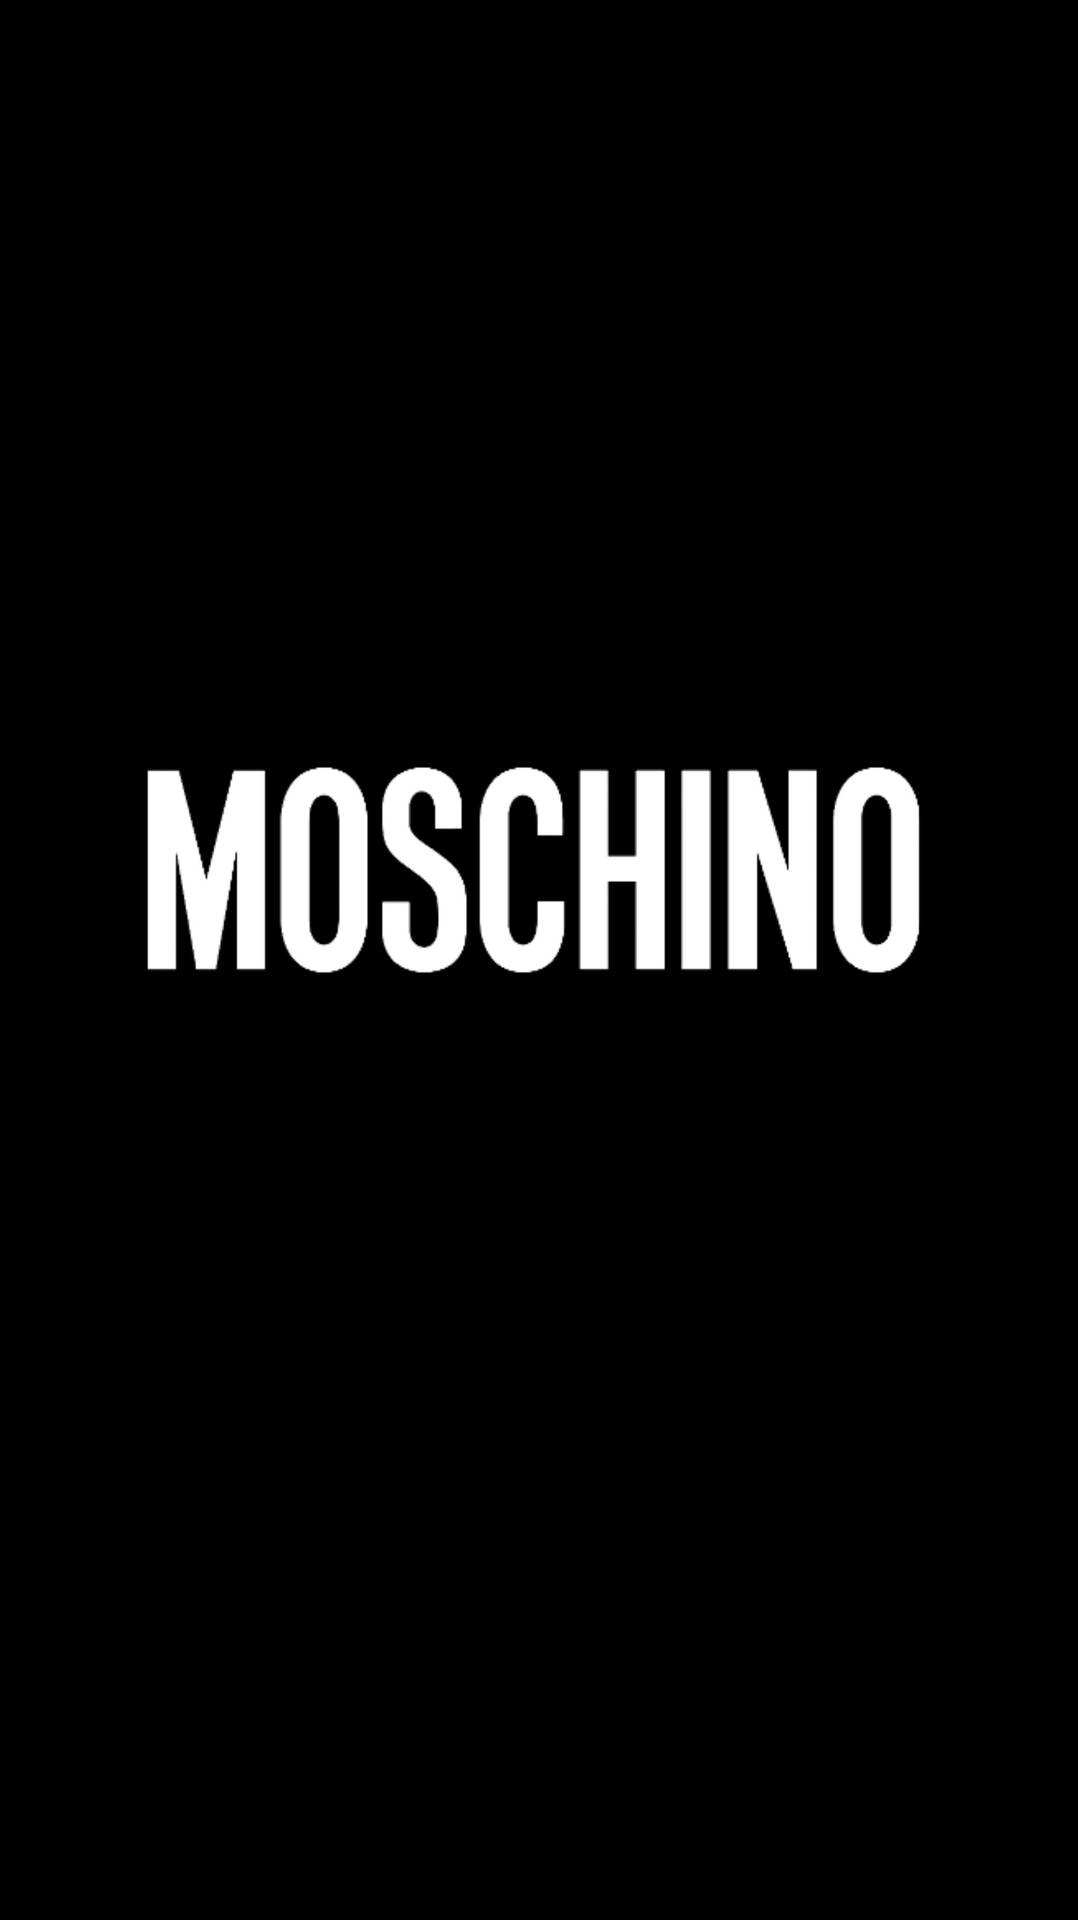 Black And White Moschino